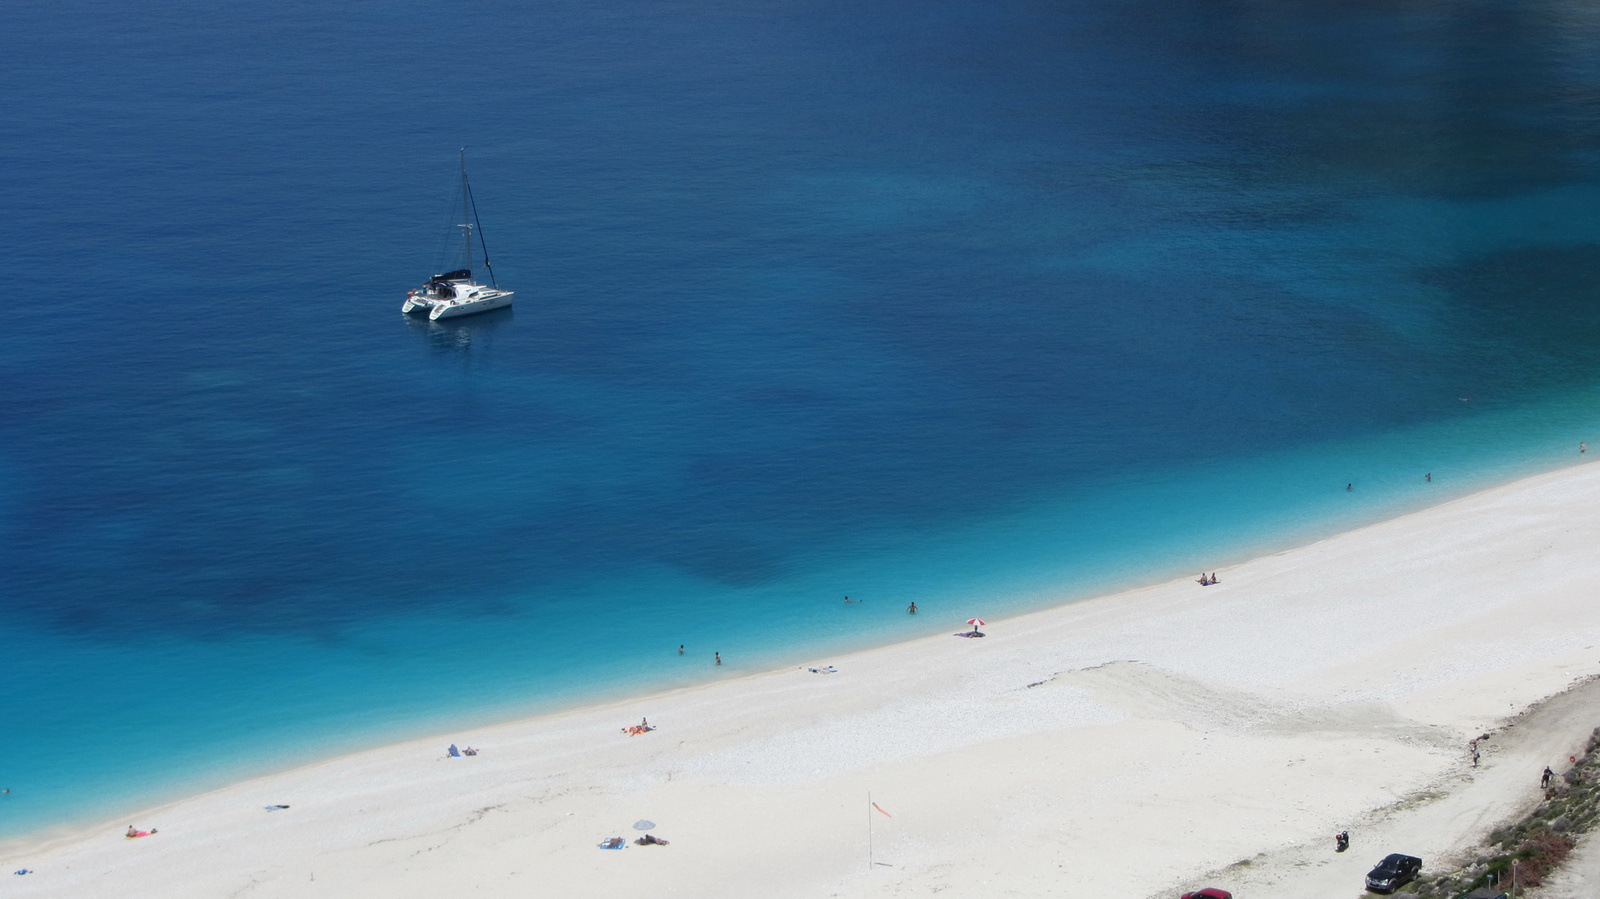 A világ 10 leghíresebb strandja közül az egyik /Myrtos beach/